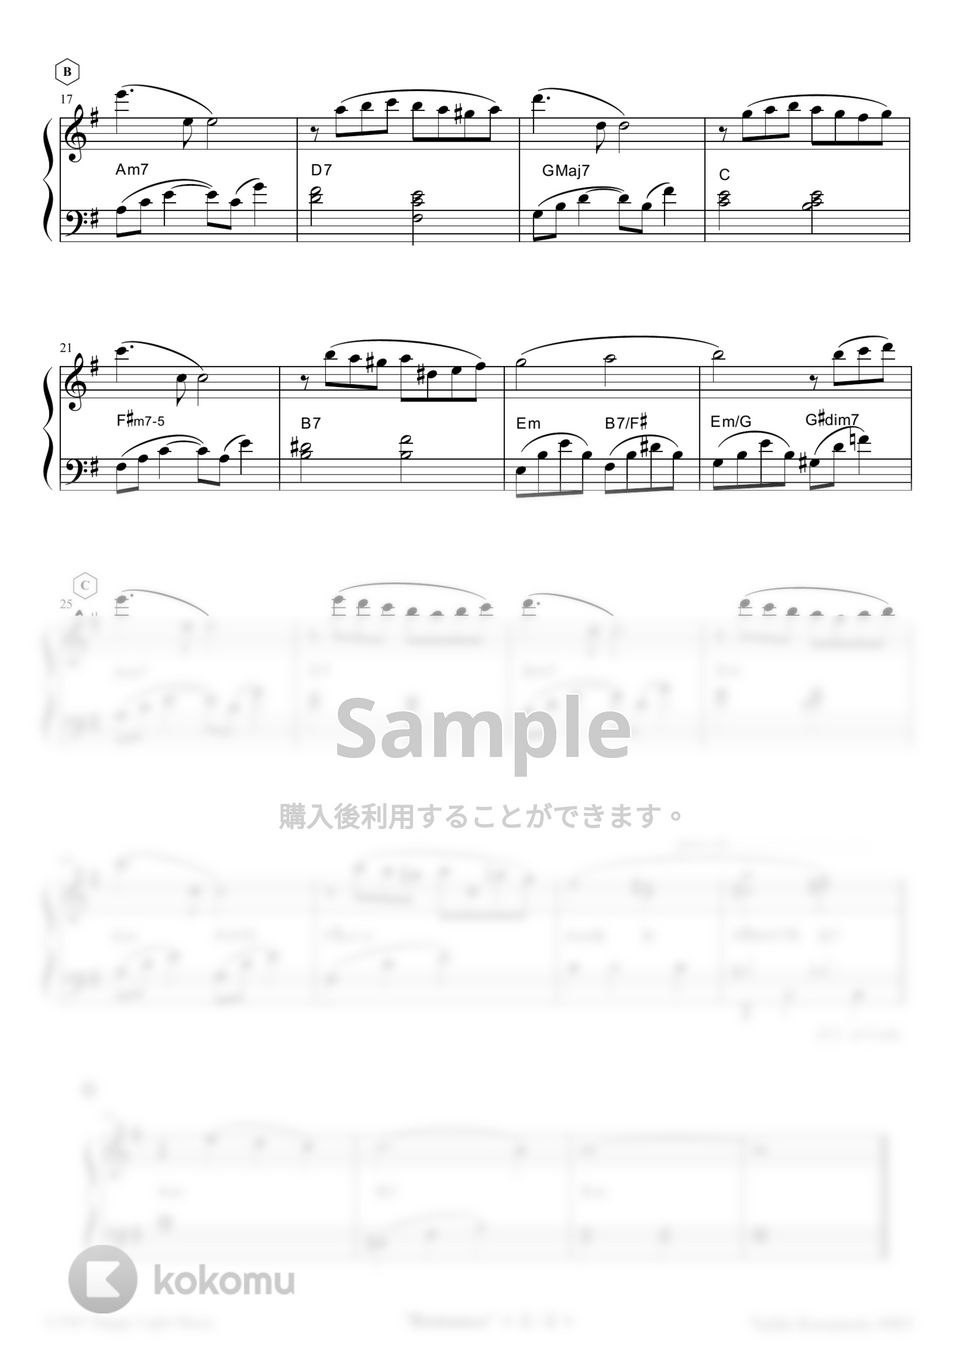 Yuhki Kuramoto - Romance (Easy Ver.) by Yuhki Kuramoto